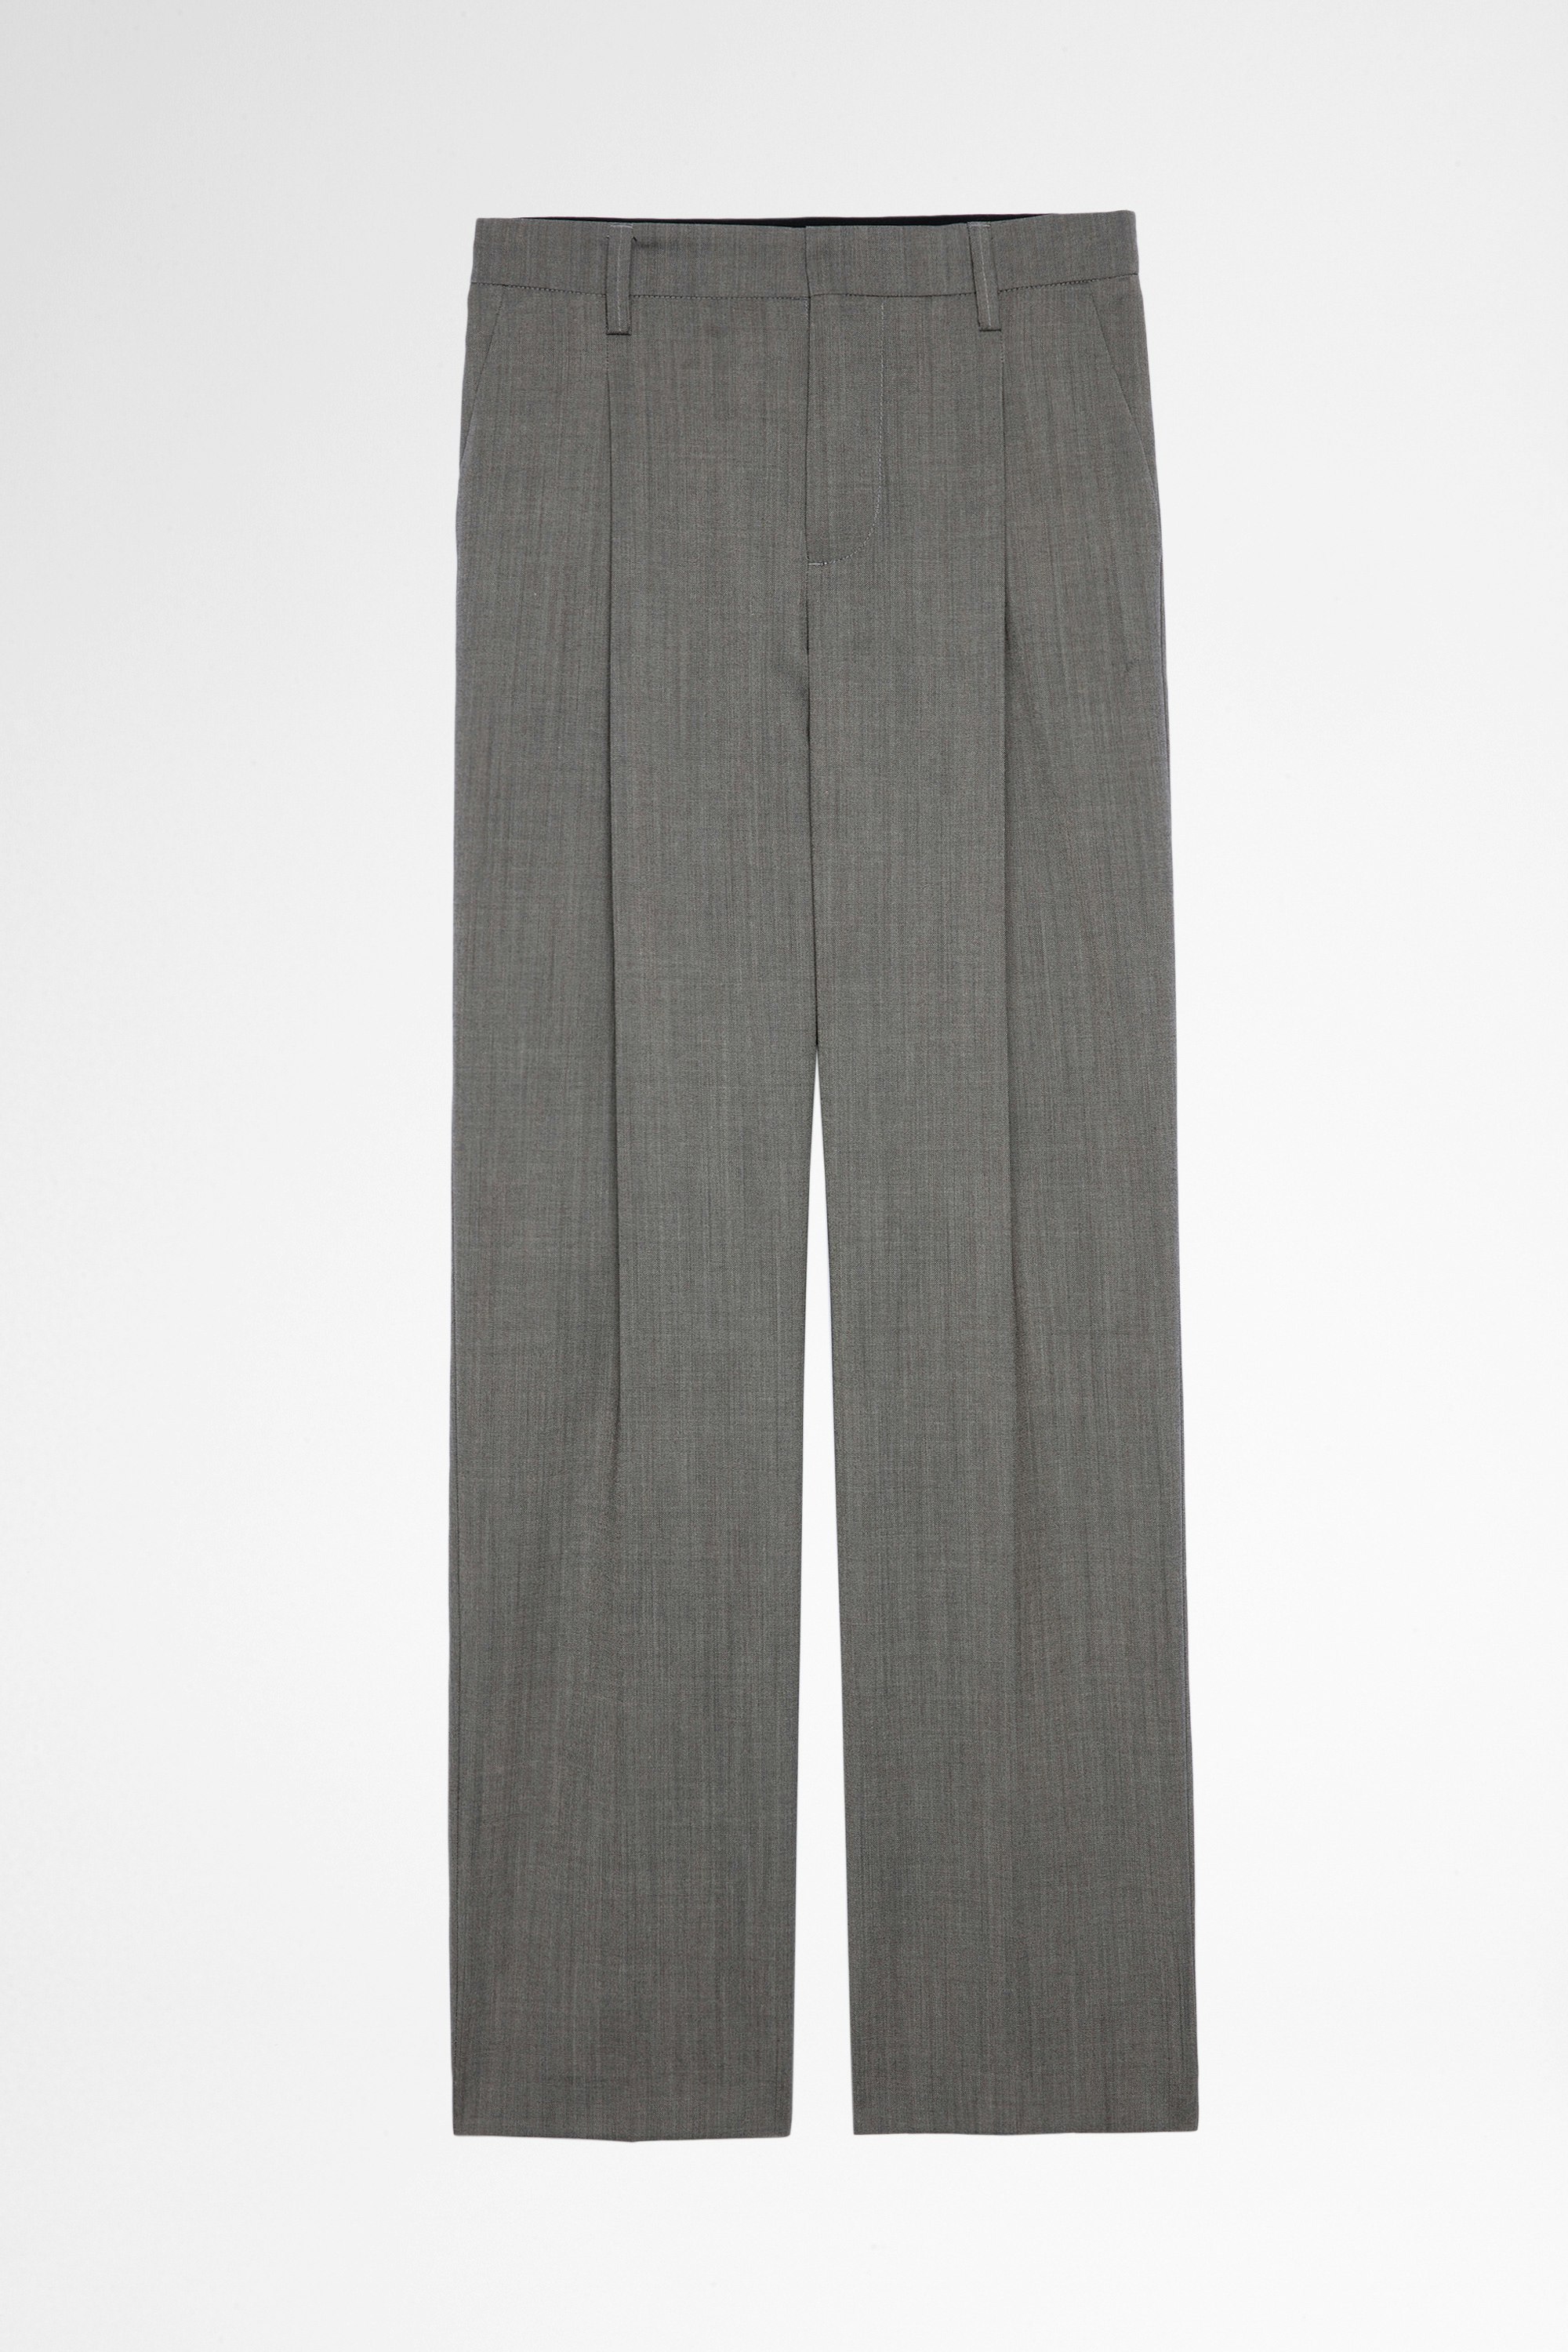 Hose Gitane Damen-Anzughose aus grauer Wolle. Hergestellt mit Fasern aus biologischem Anbau